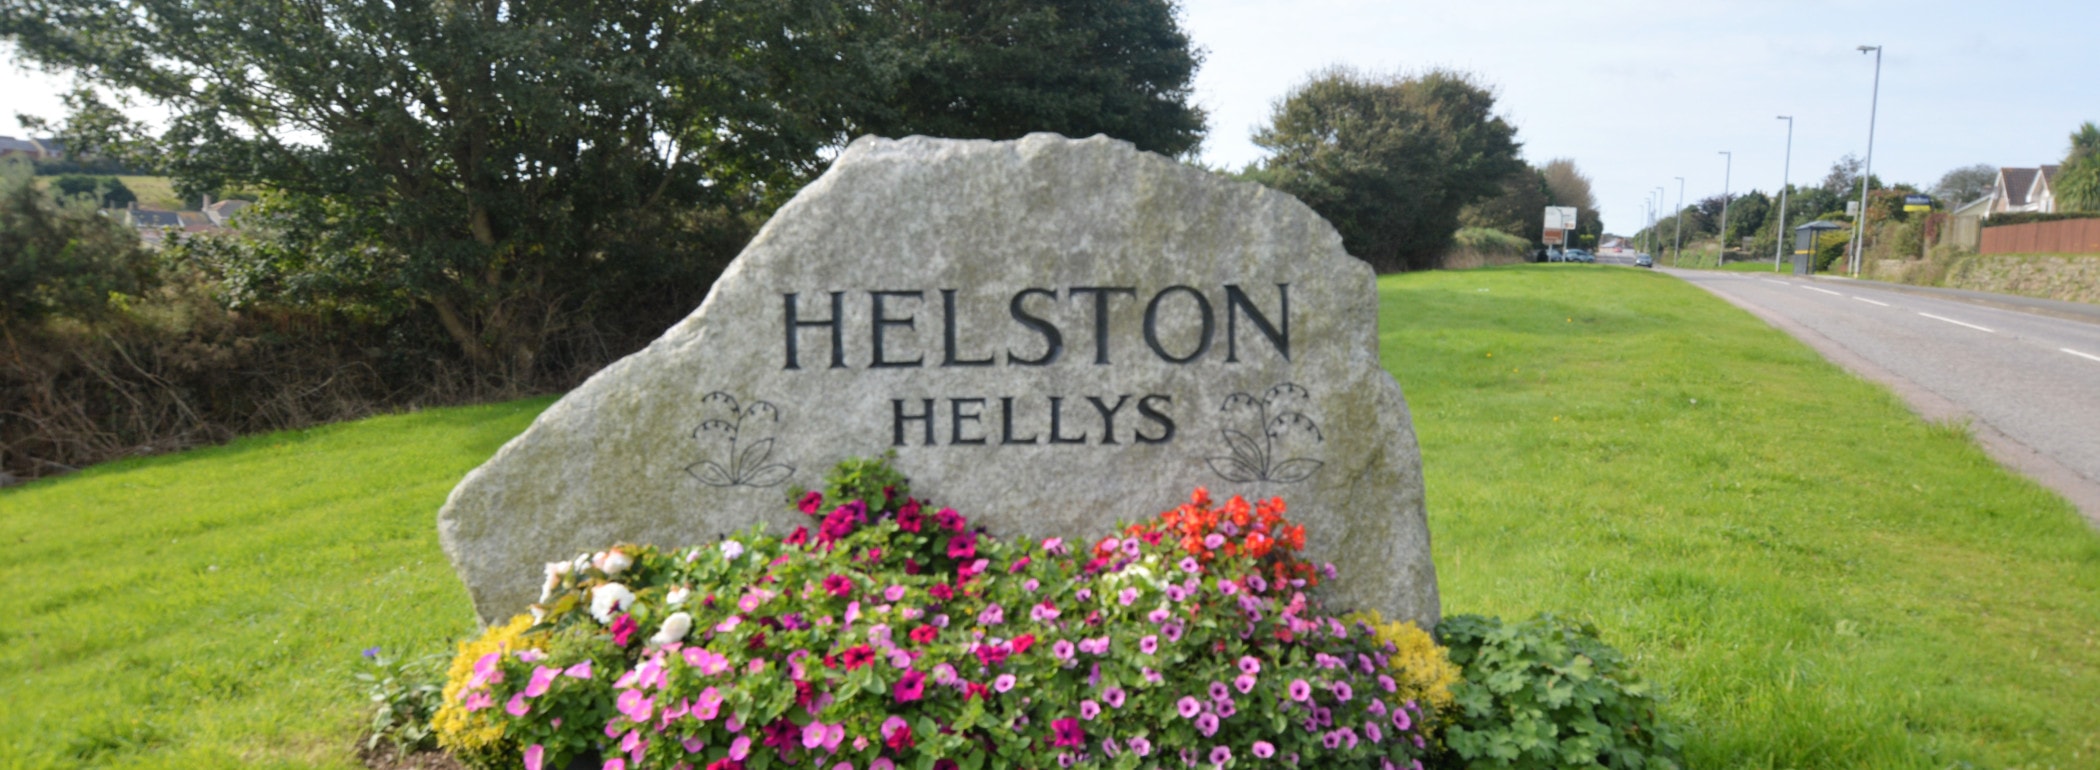 Helston-Hellys